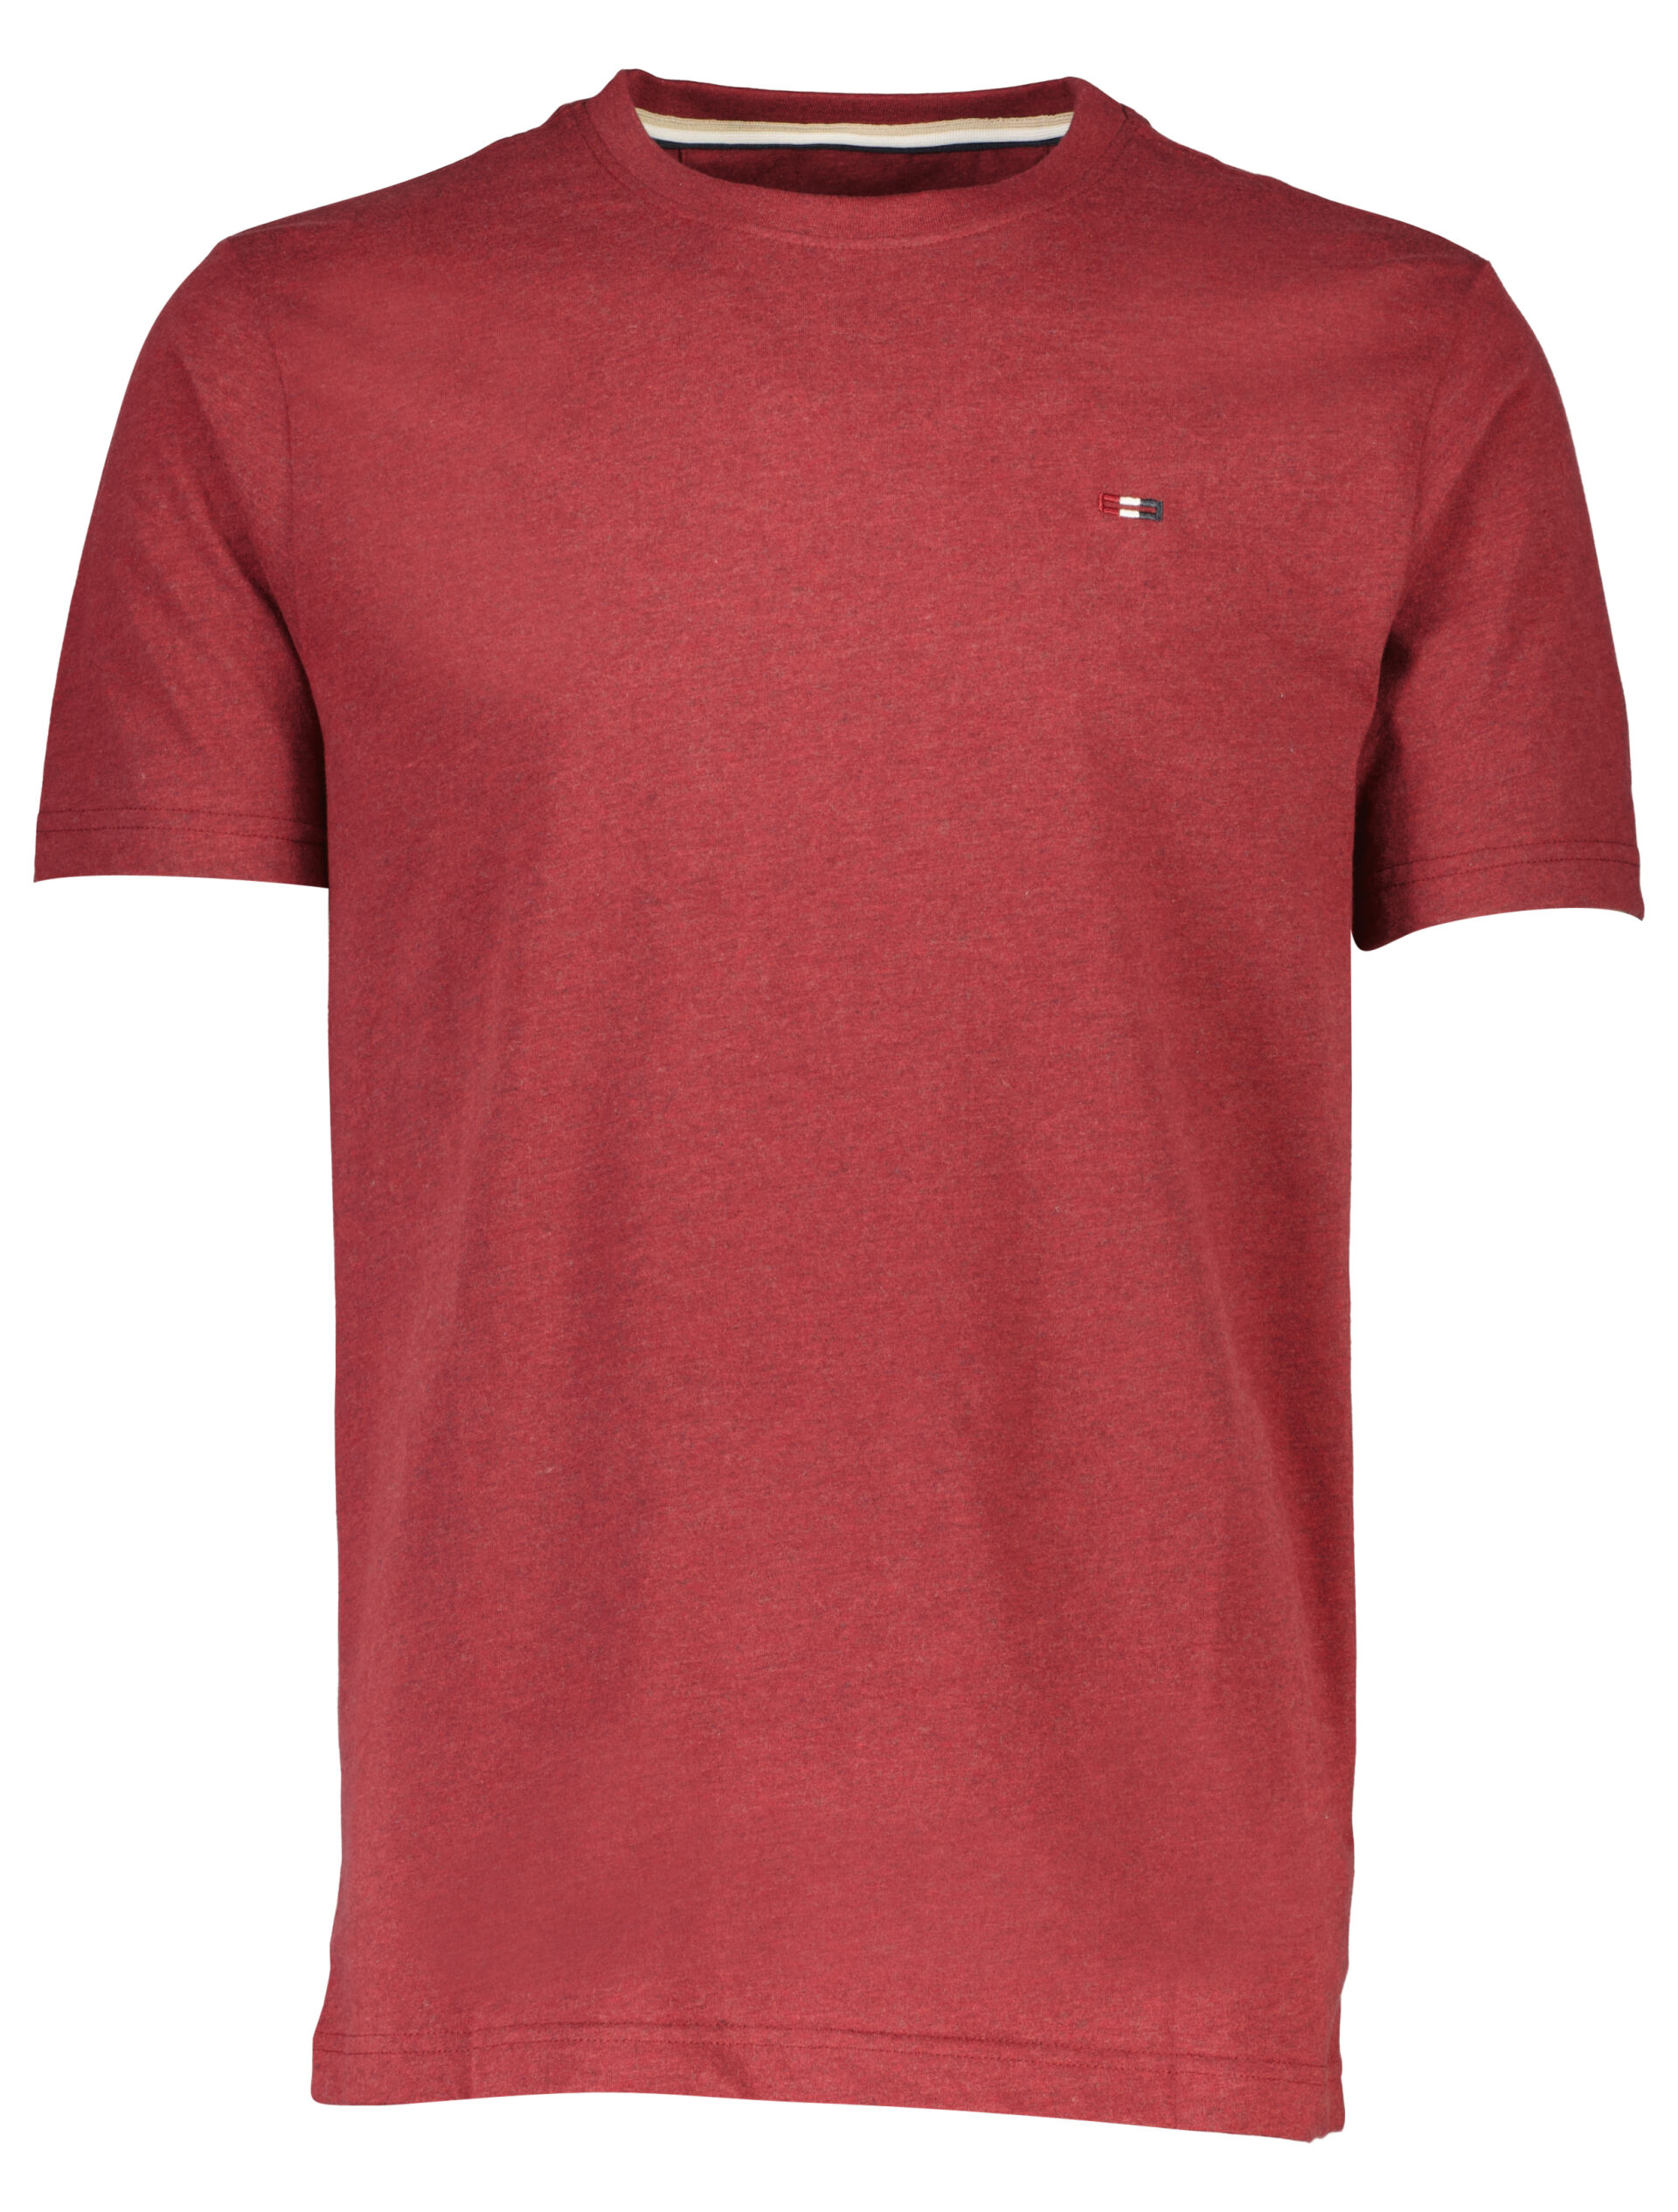 Bison  T-shirt Röd 80-400111A